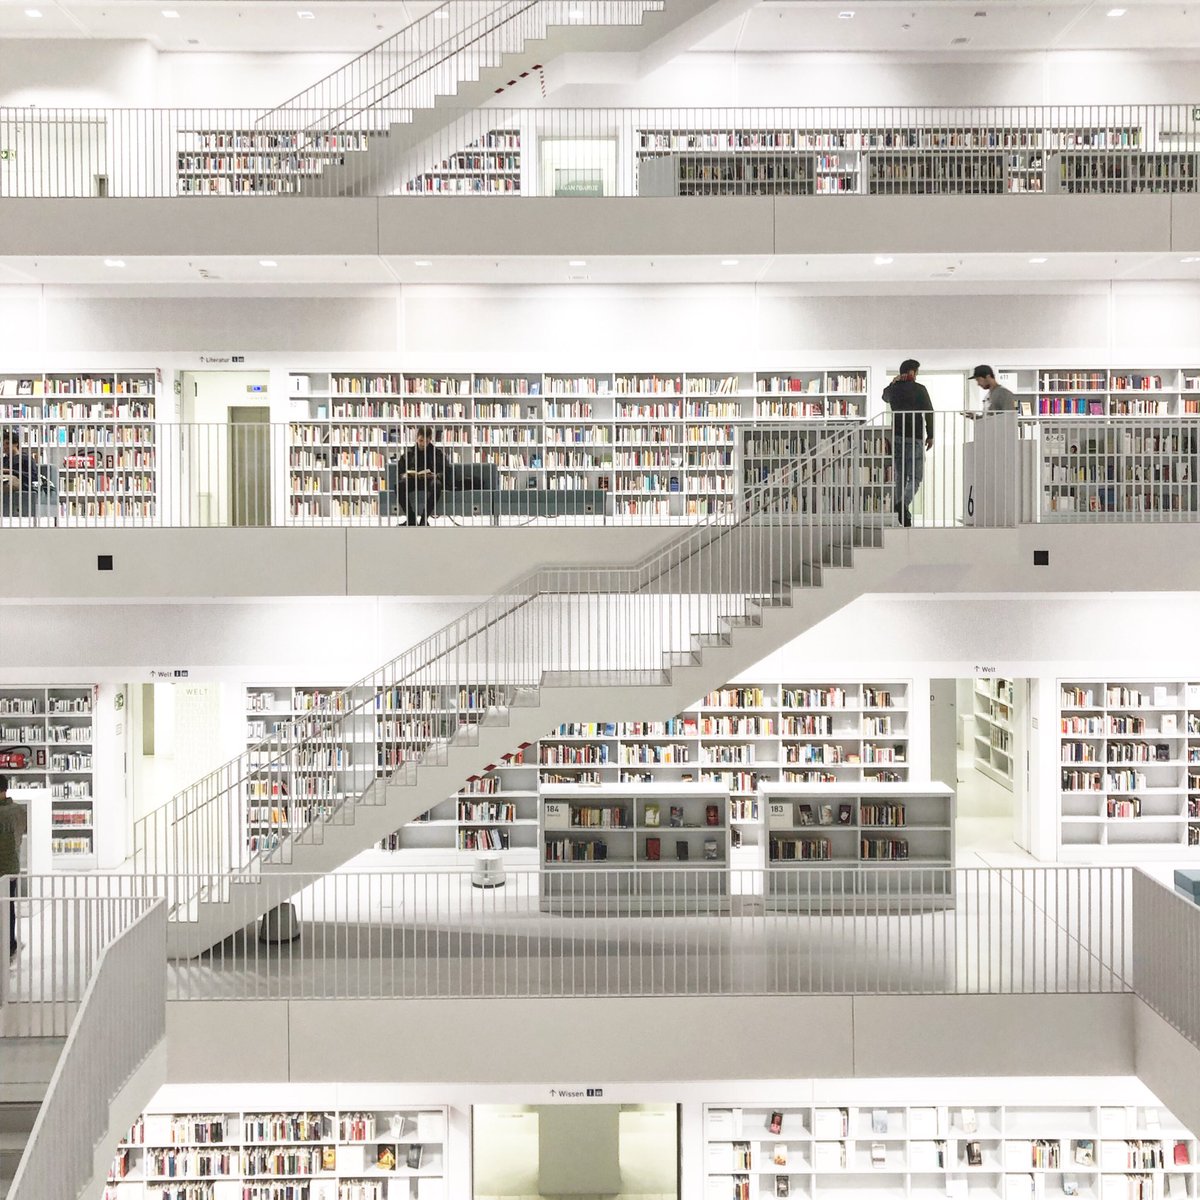 ট ইট র 小澤巧太郎 シュトゥットガルト市立図書館 模型みたいな図書館だな でもまとまってて綺麗 1番下には泉があったけど インドの階段井戸でもイメージしたんかな